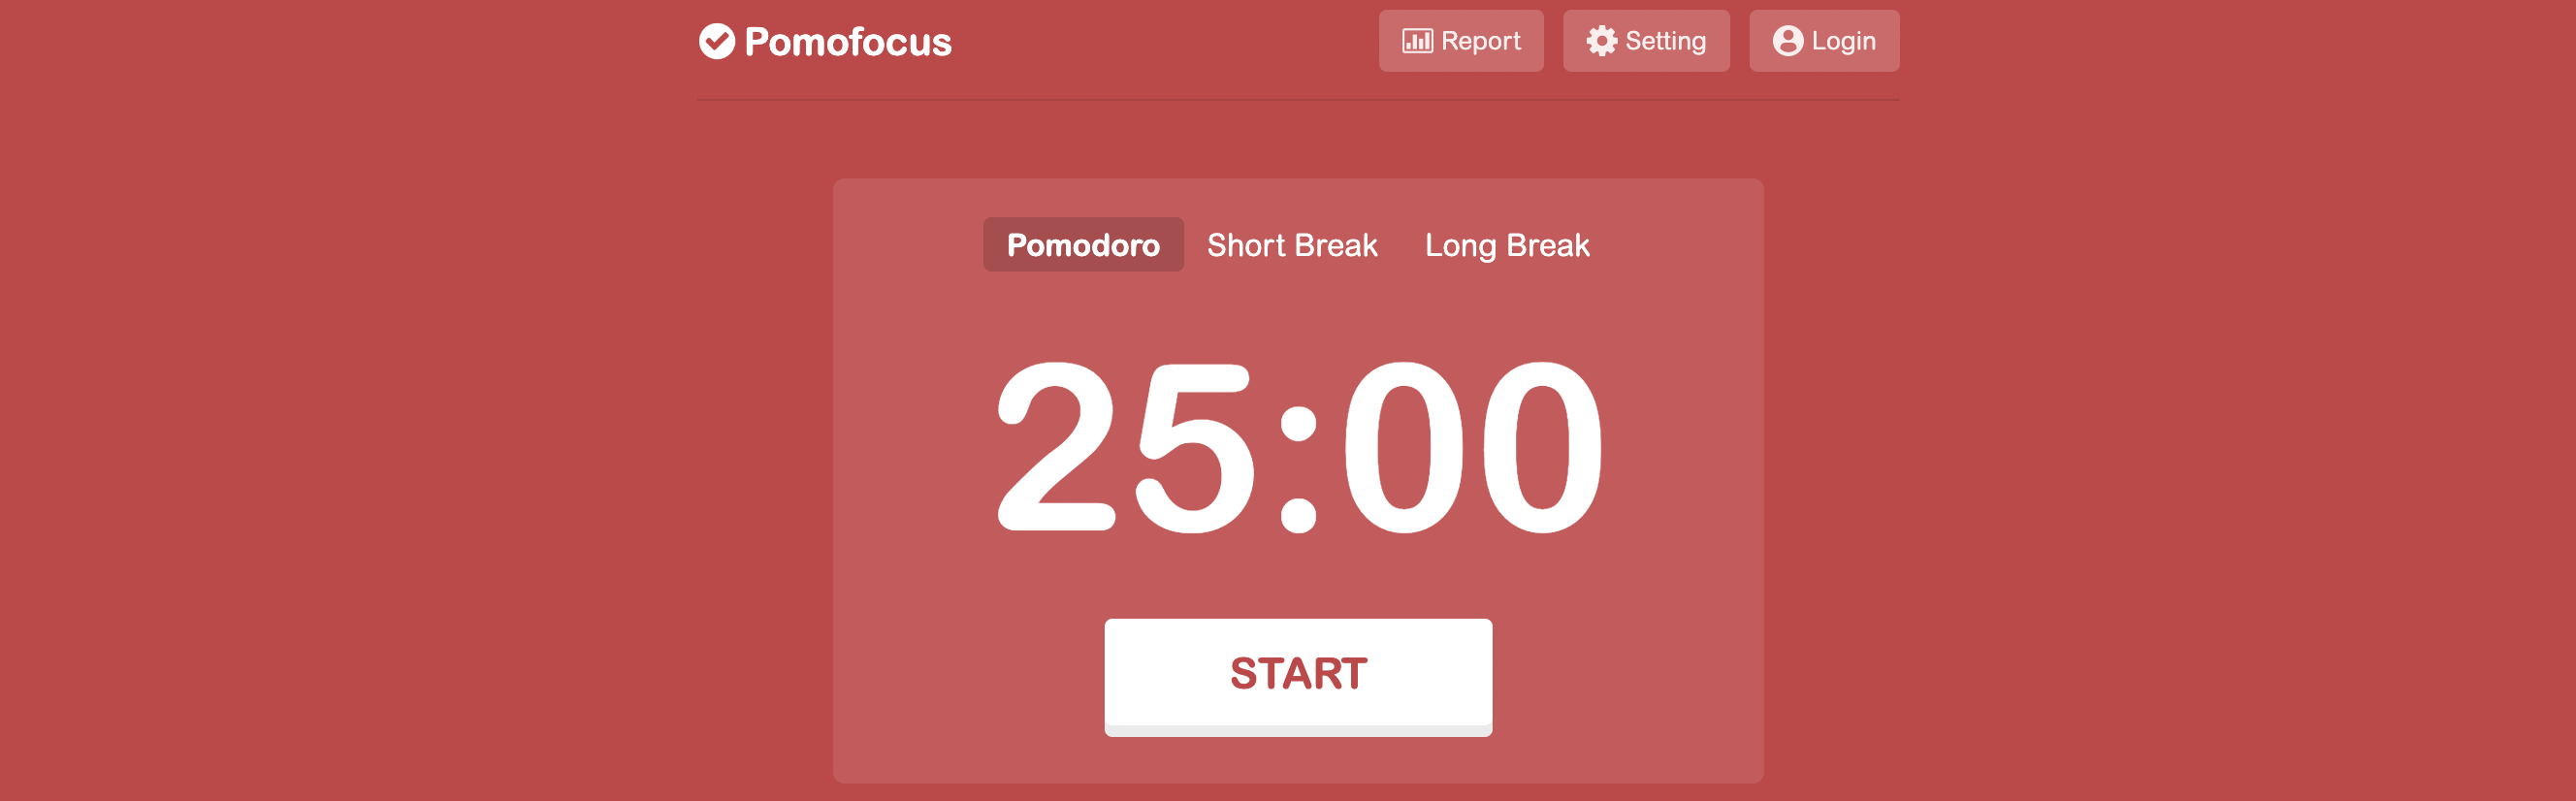 PomoFocus homepage